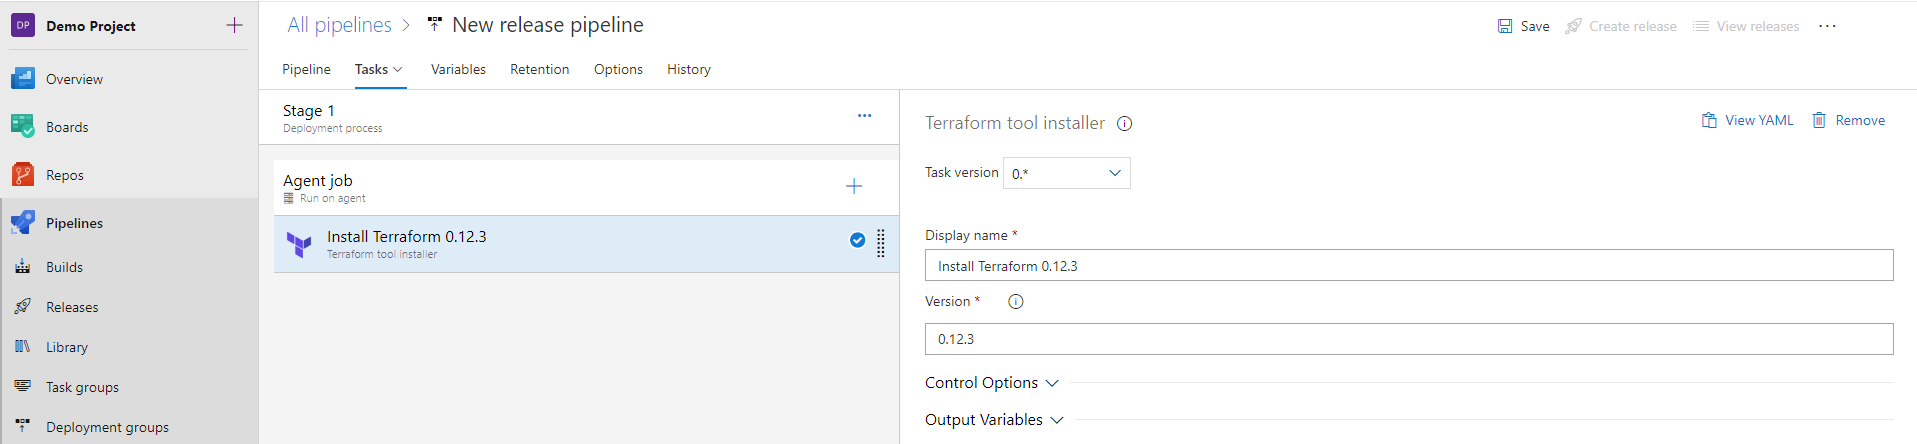 Using Terraform tool installer task